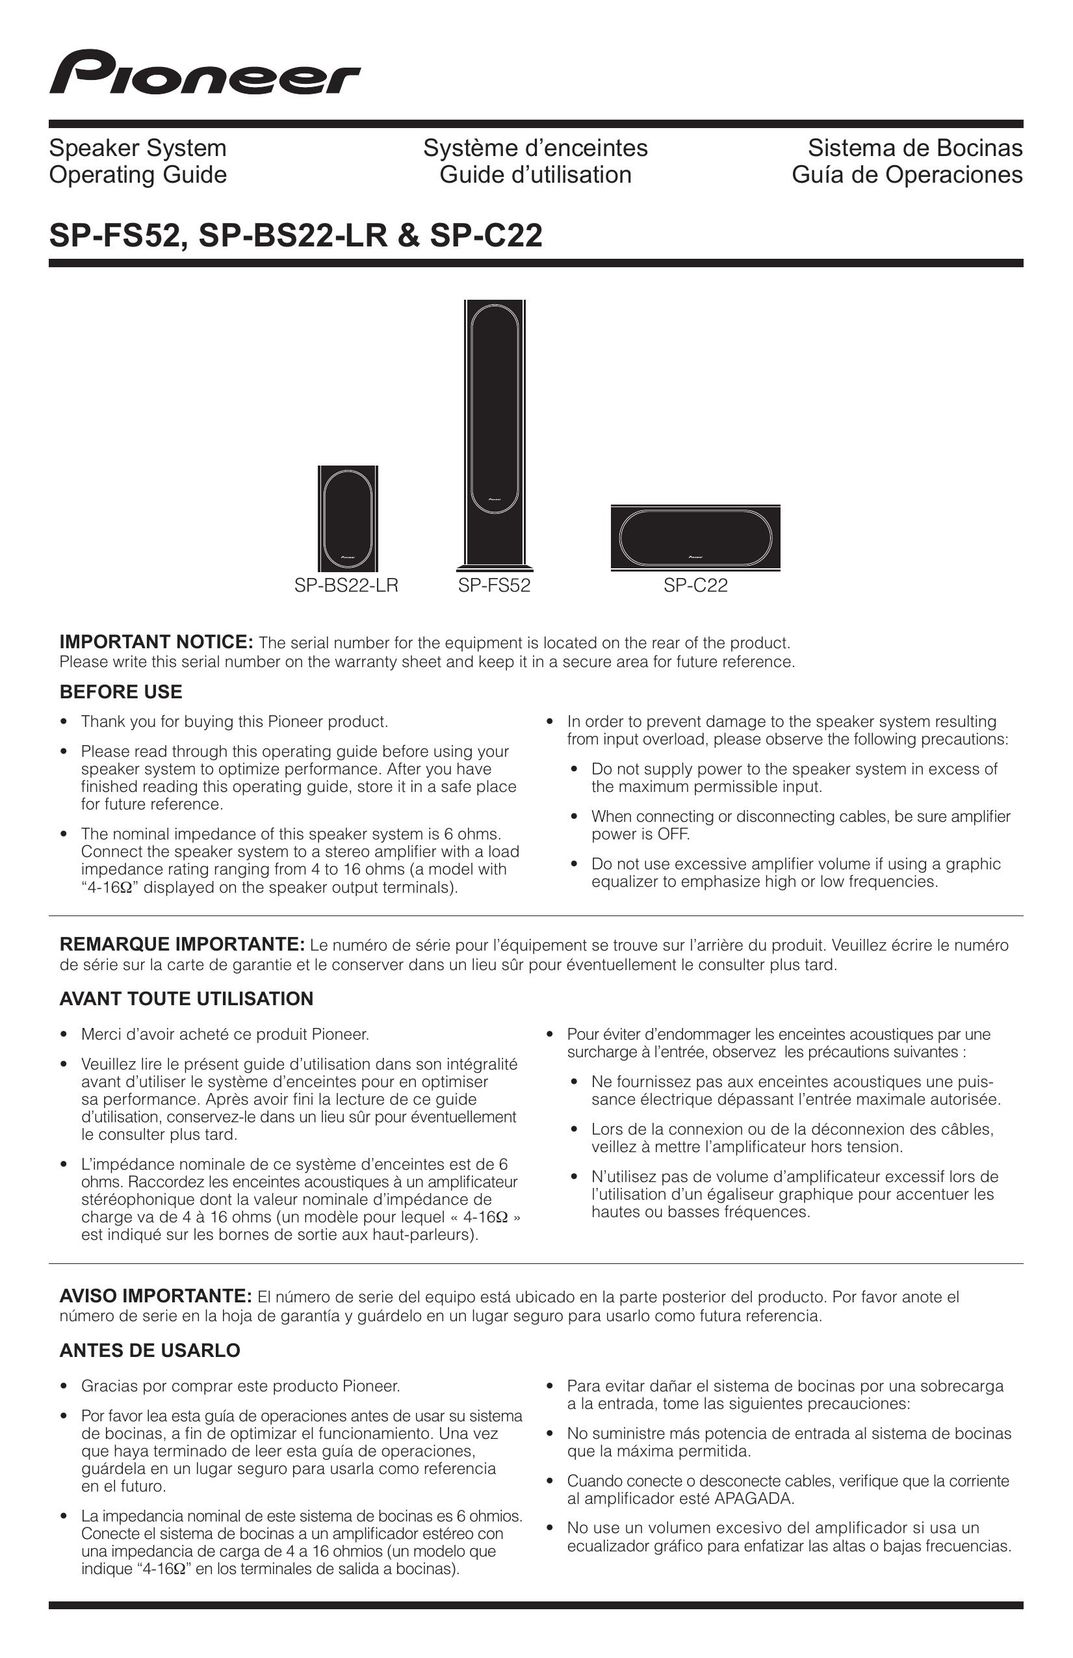 Pioneer SP-BS22-LR Car Speaker User Manual